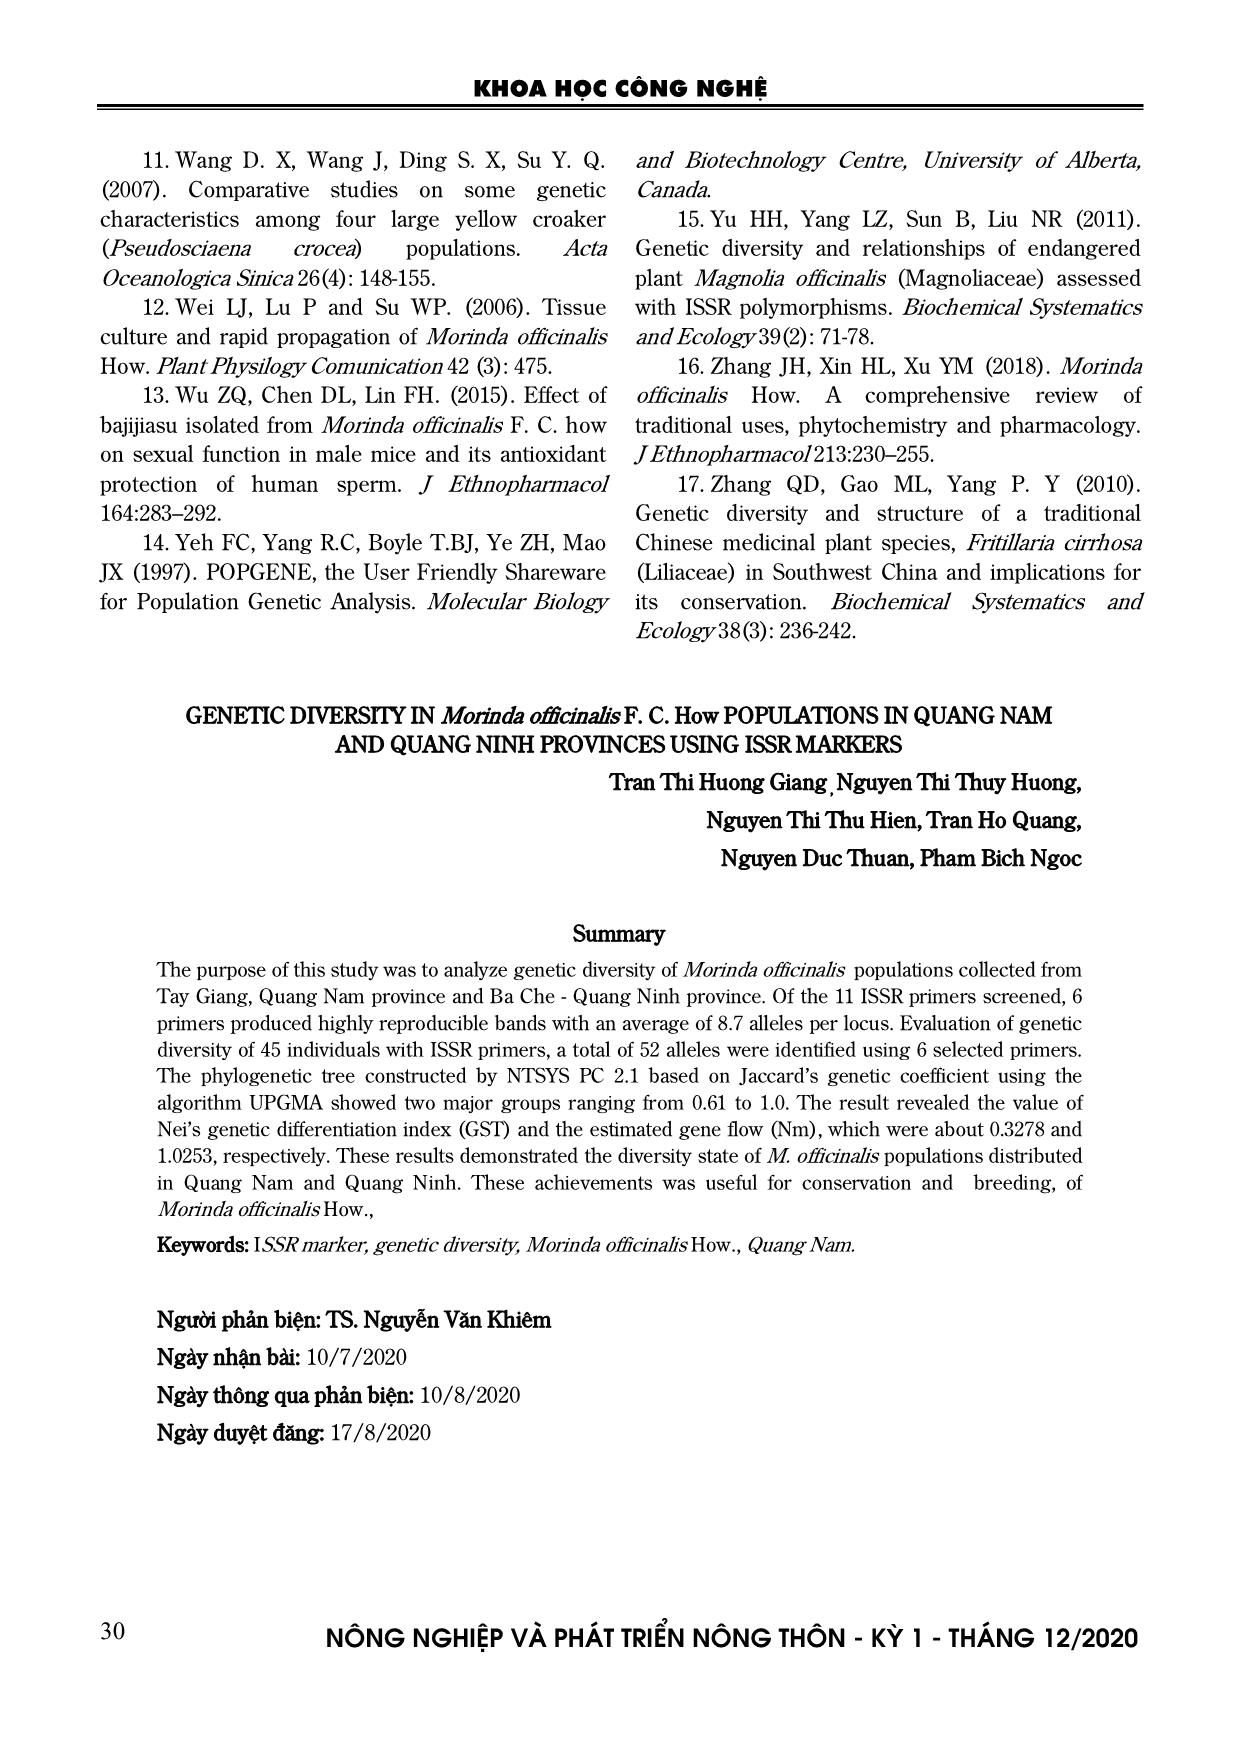 Đánh giá đa dạng di truyền trong các quần thể ba kích tím (Morinda officinalis F. C. How.,) tại Quảng Nam và Quảng Ninh bằng chỉ thị phân tử ISSR trang 8